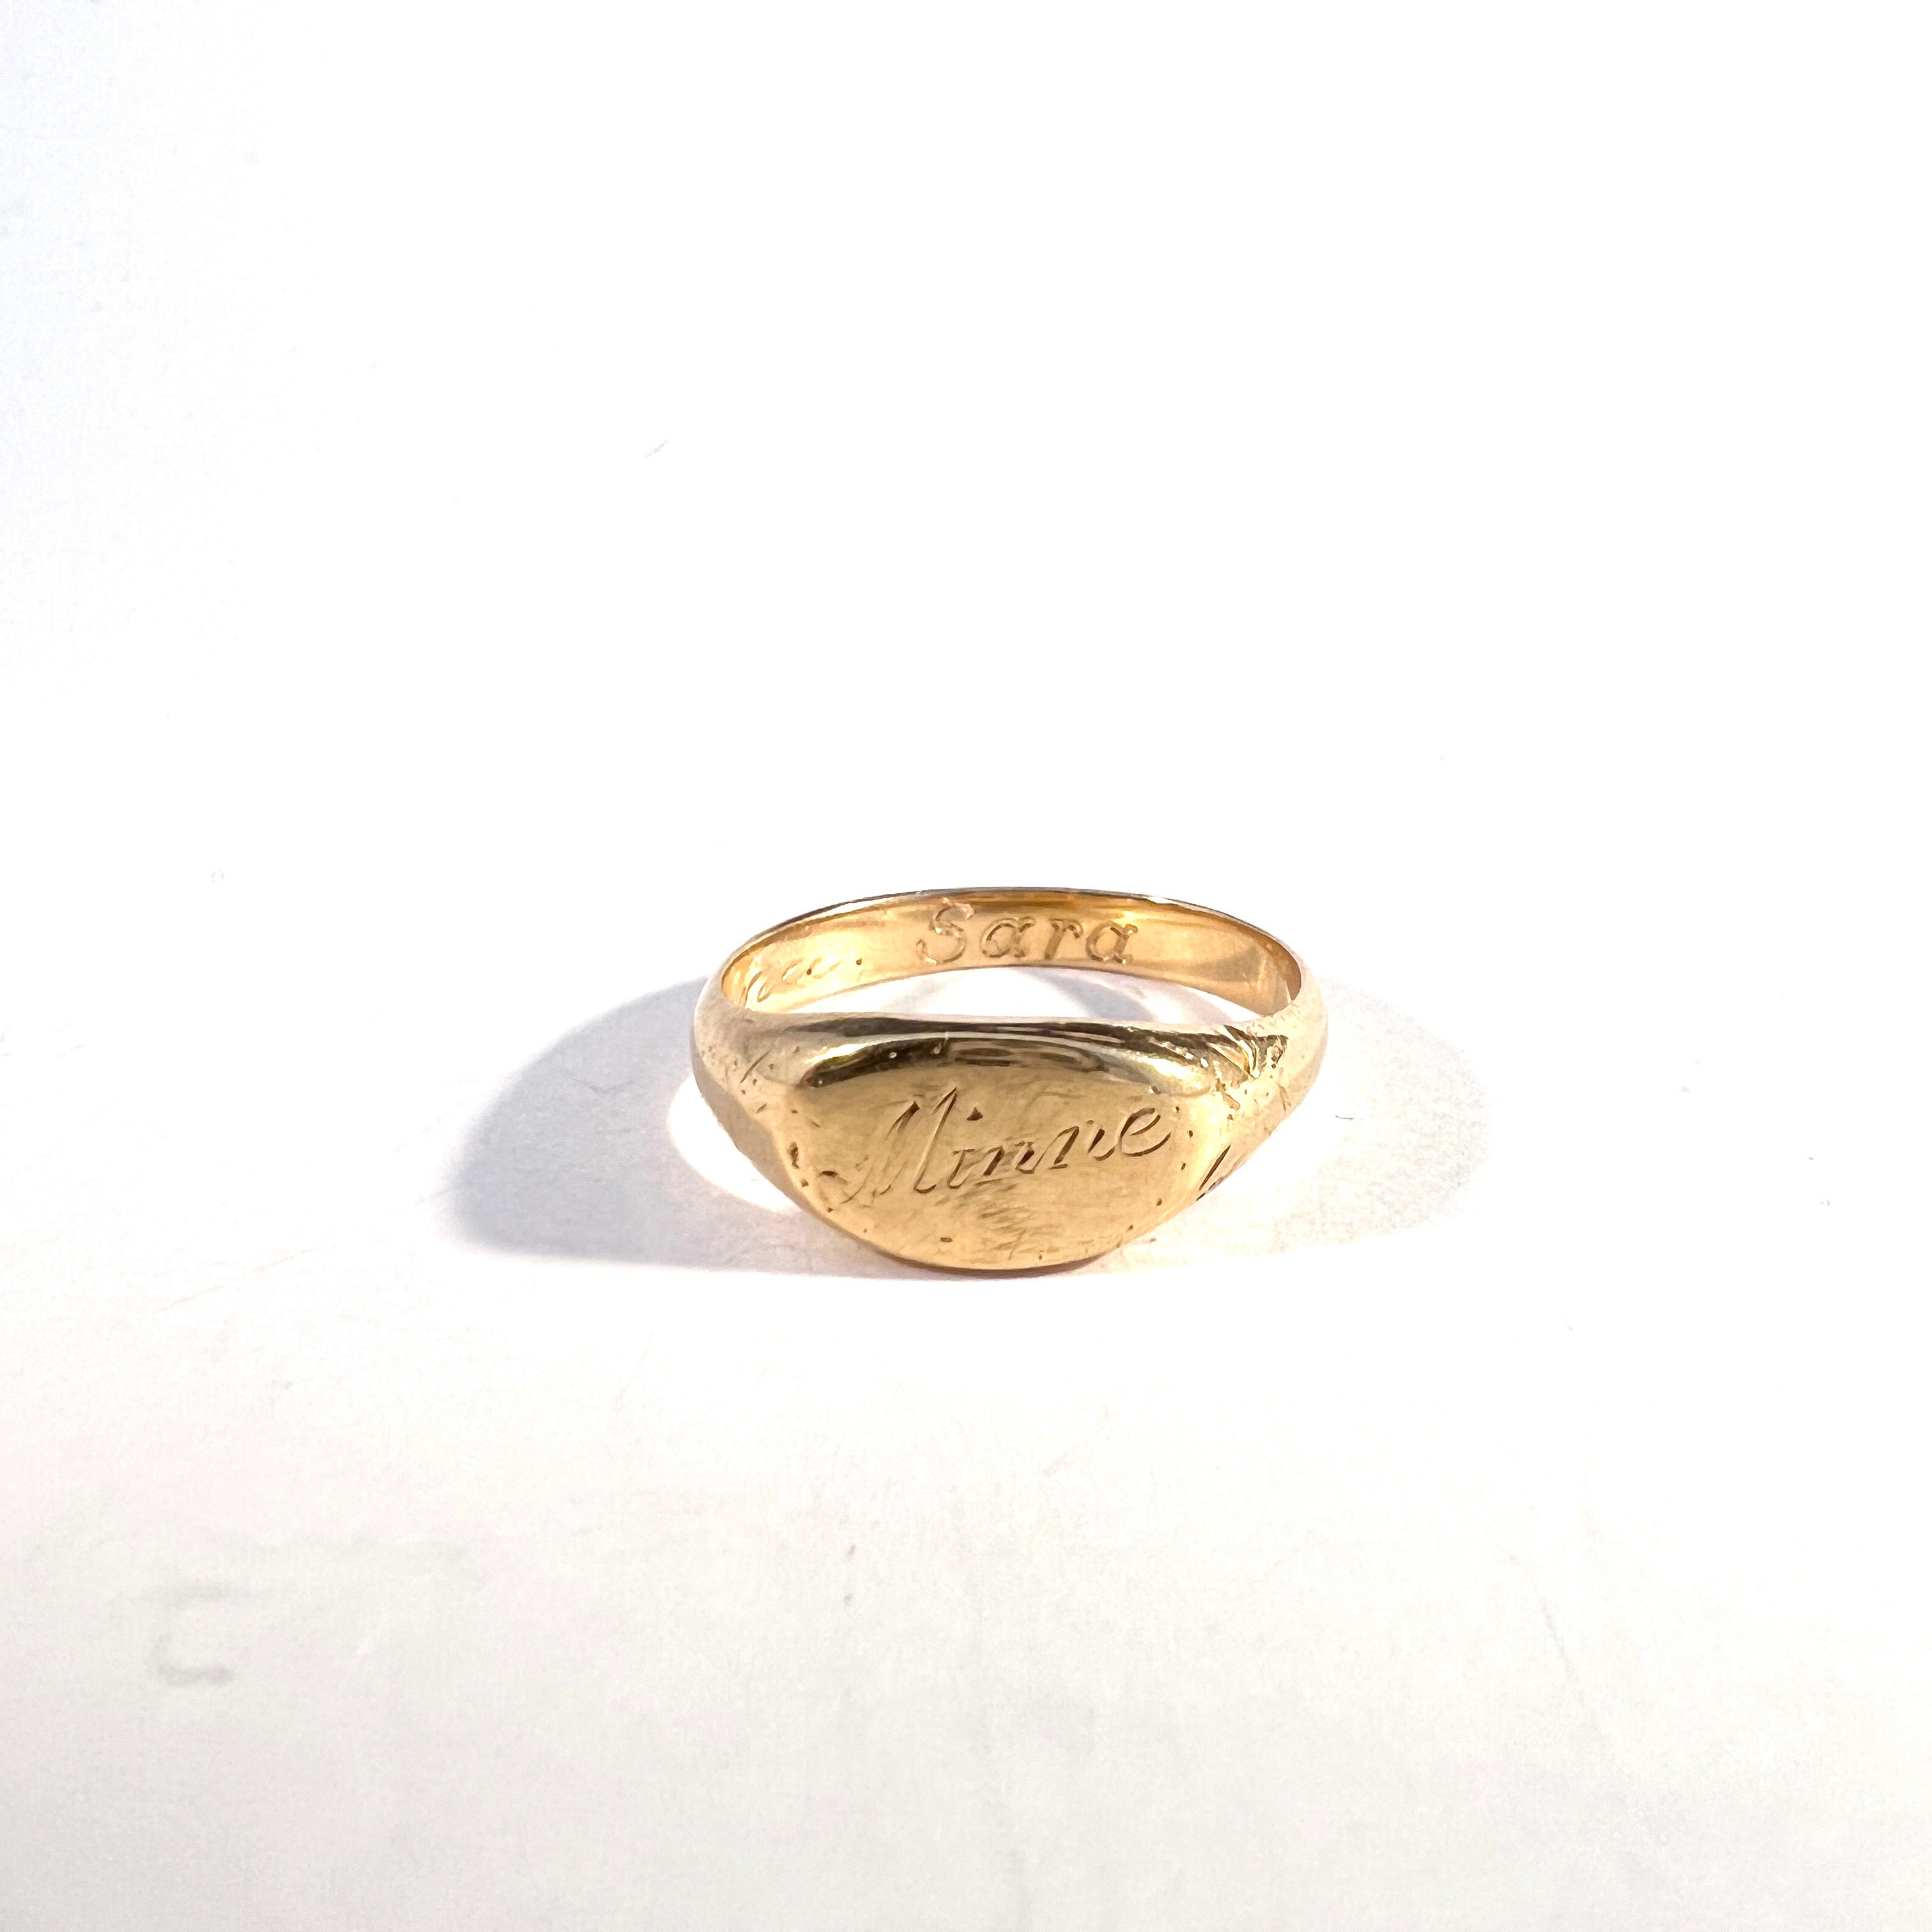 T Nordström, Sweden 1932. Vintage 18k Gold Memory Ring.